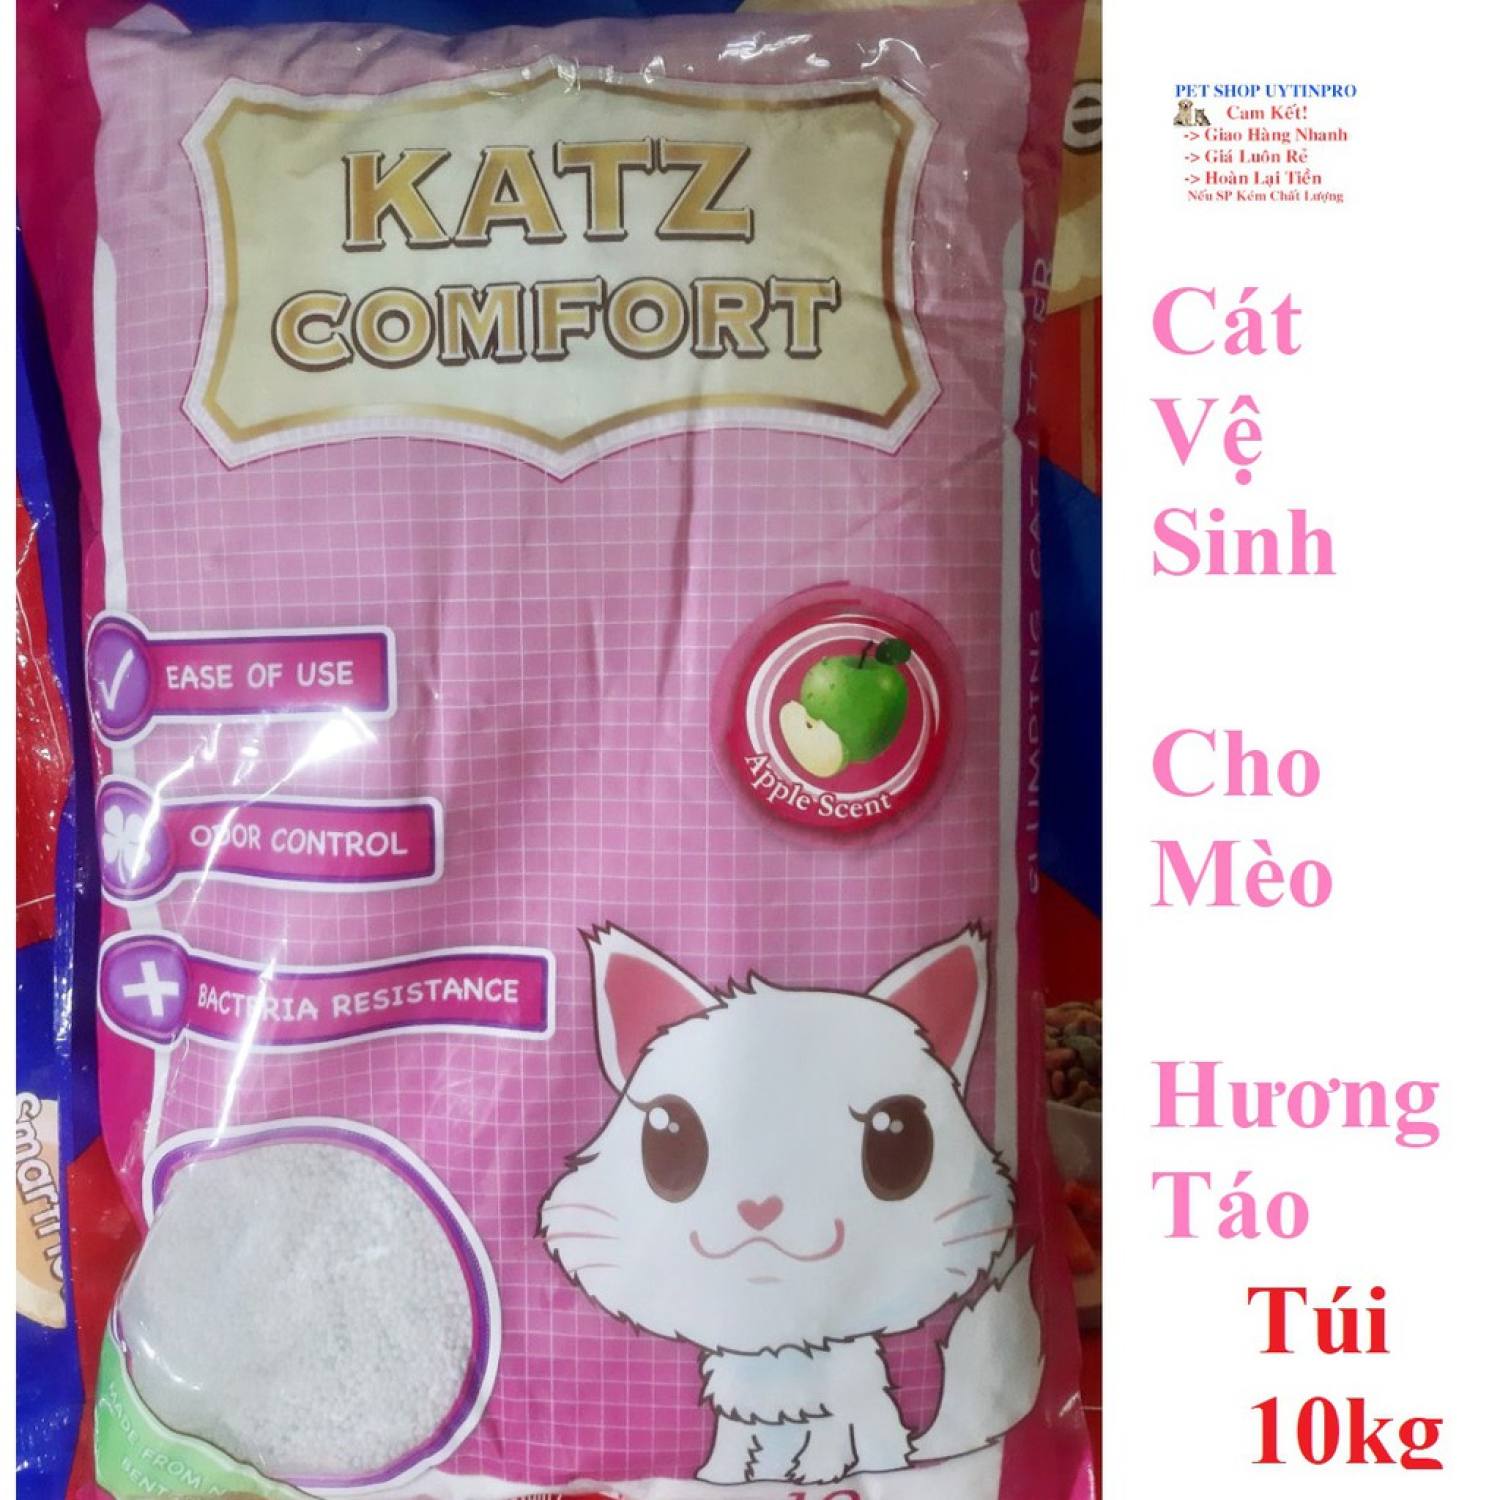 CÁT VỆ SINH CHO MÈO Katz Comfort Hương Táo Túi 10L - Pet shop 24